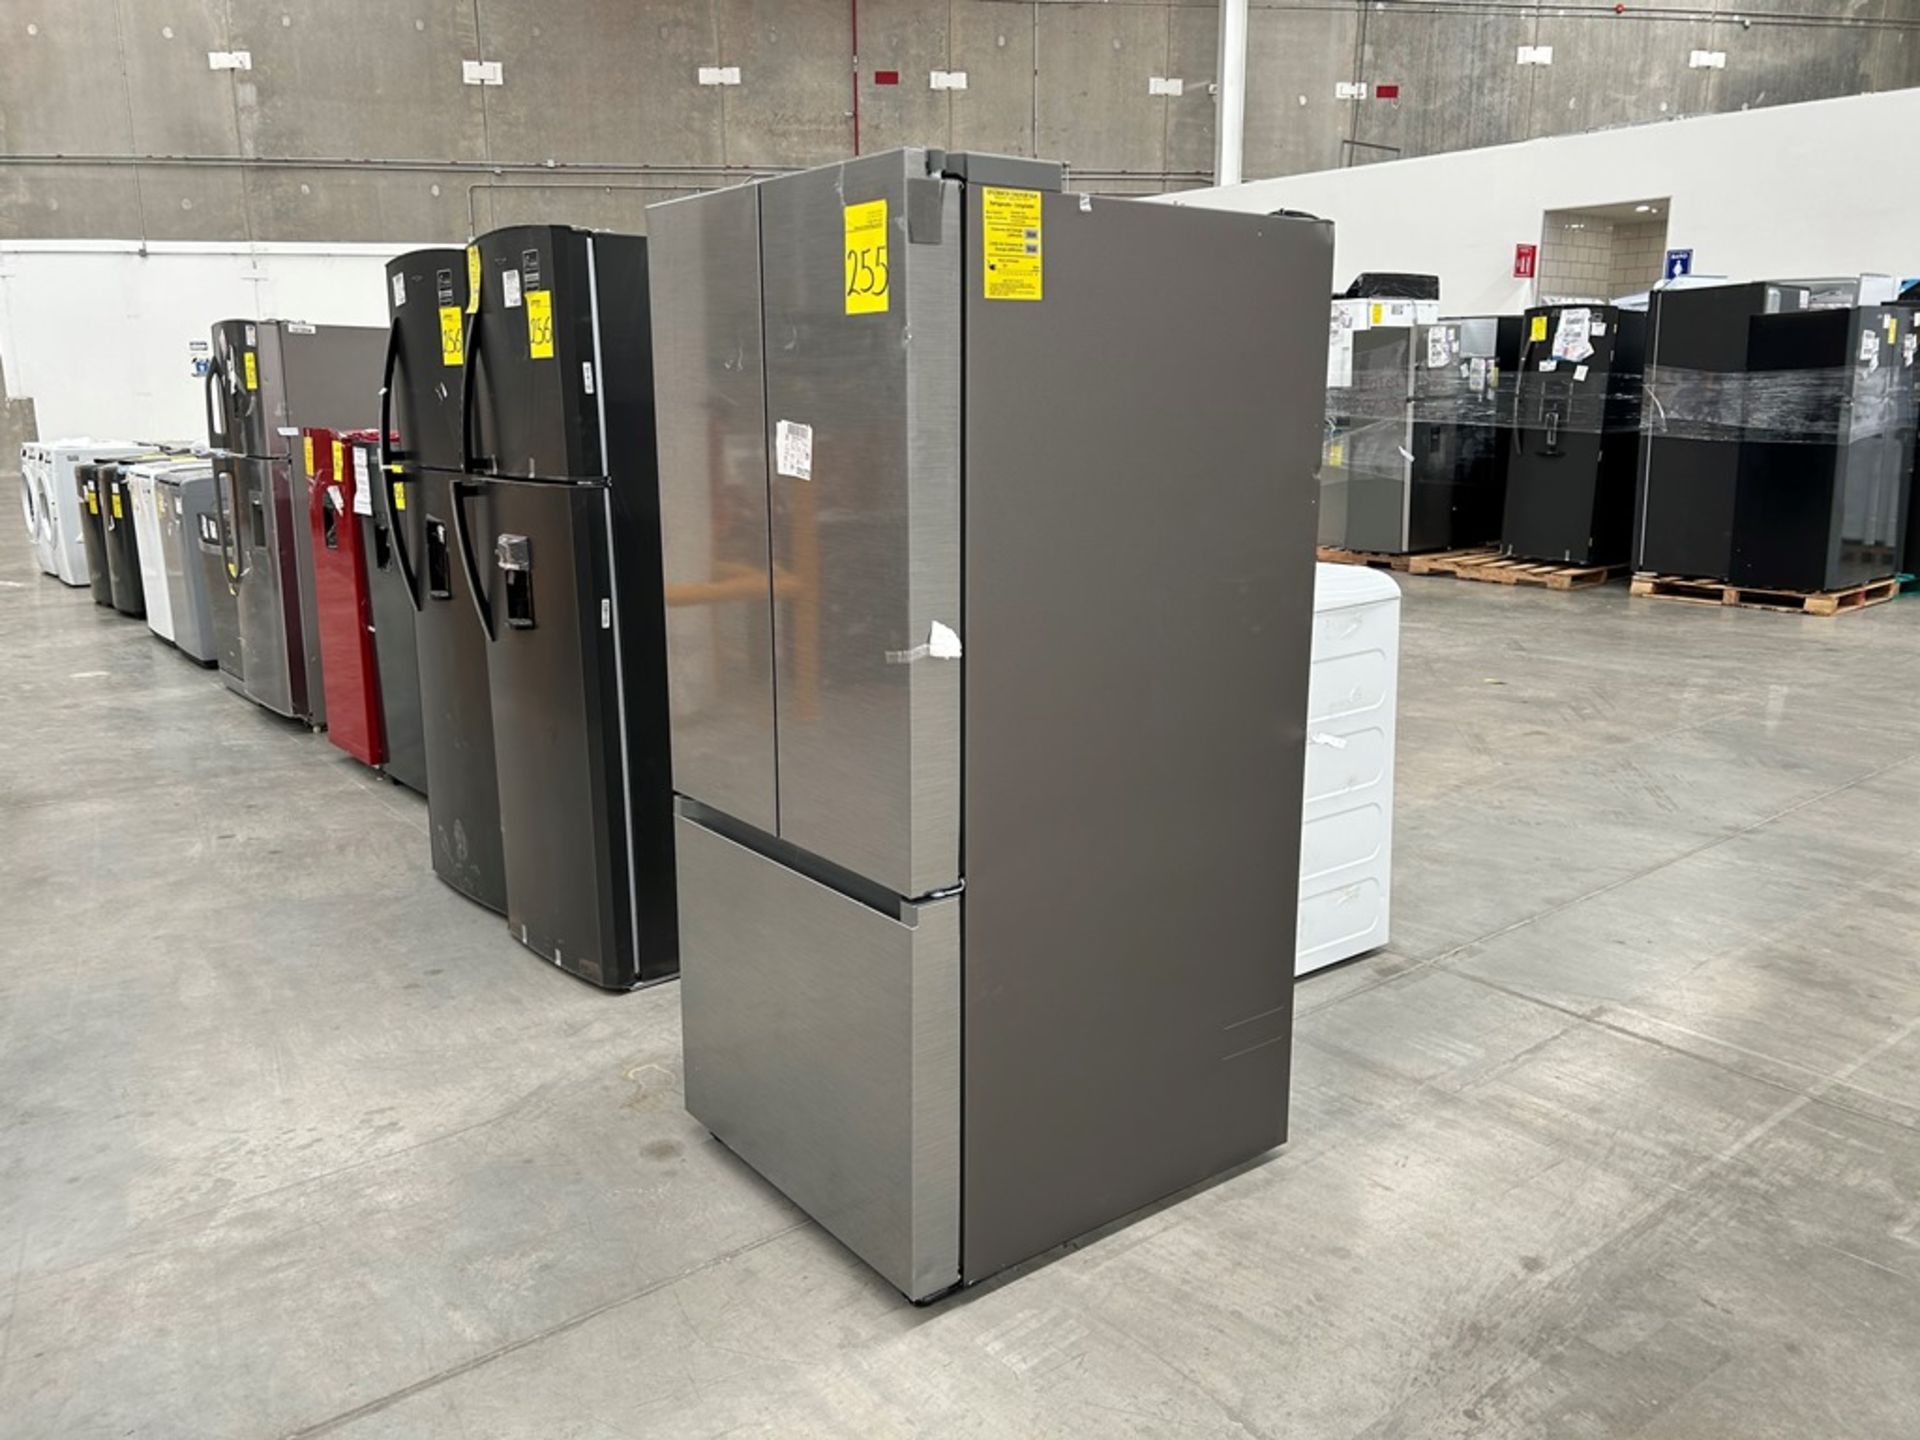 1 refrigerador Marca SAMSUNG, Modelo RF22A4010S9, Serie 01967J, Color GRIS (Equipo de devolución) - Image 2 of 5